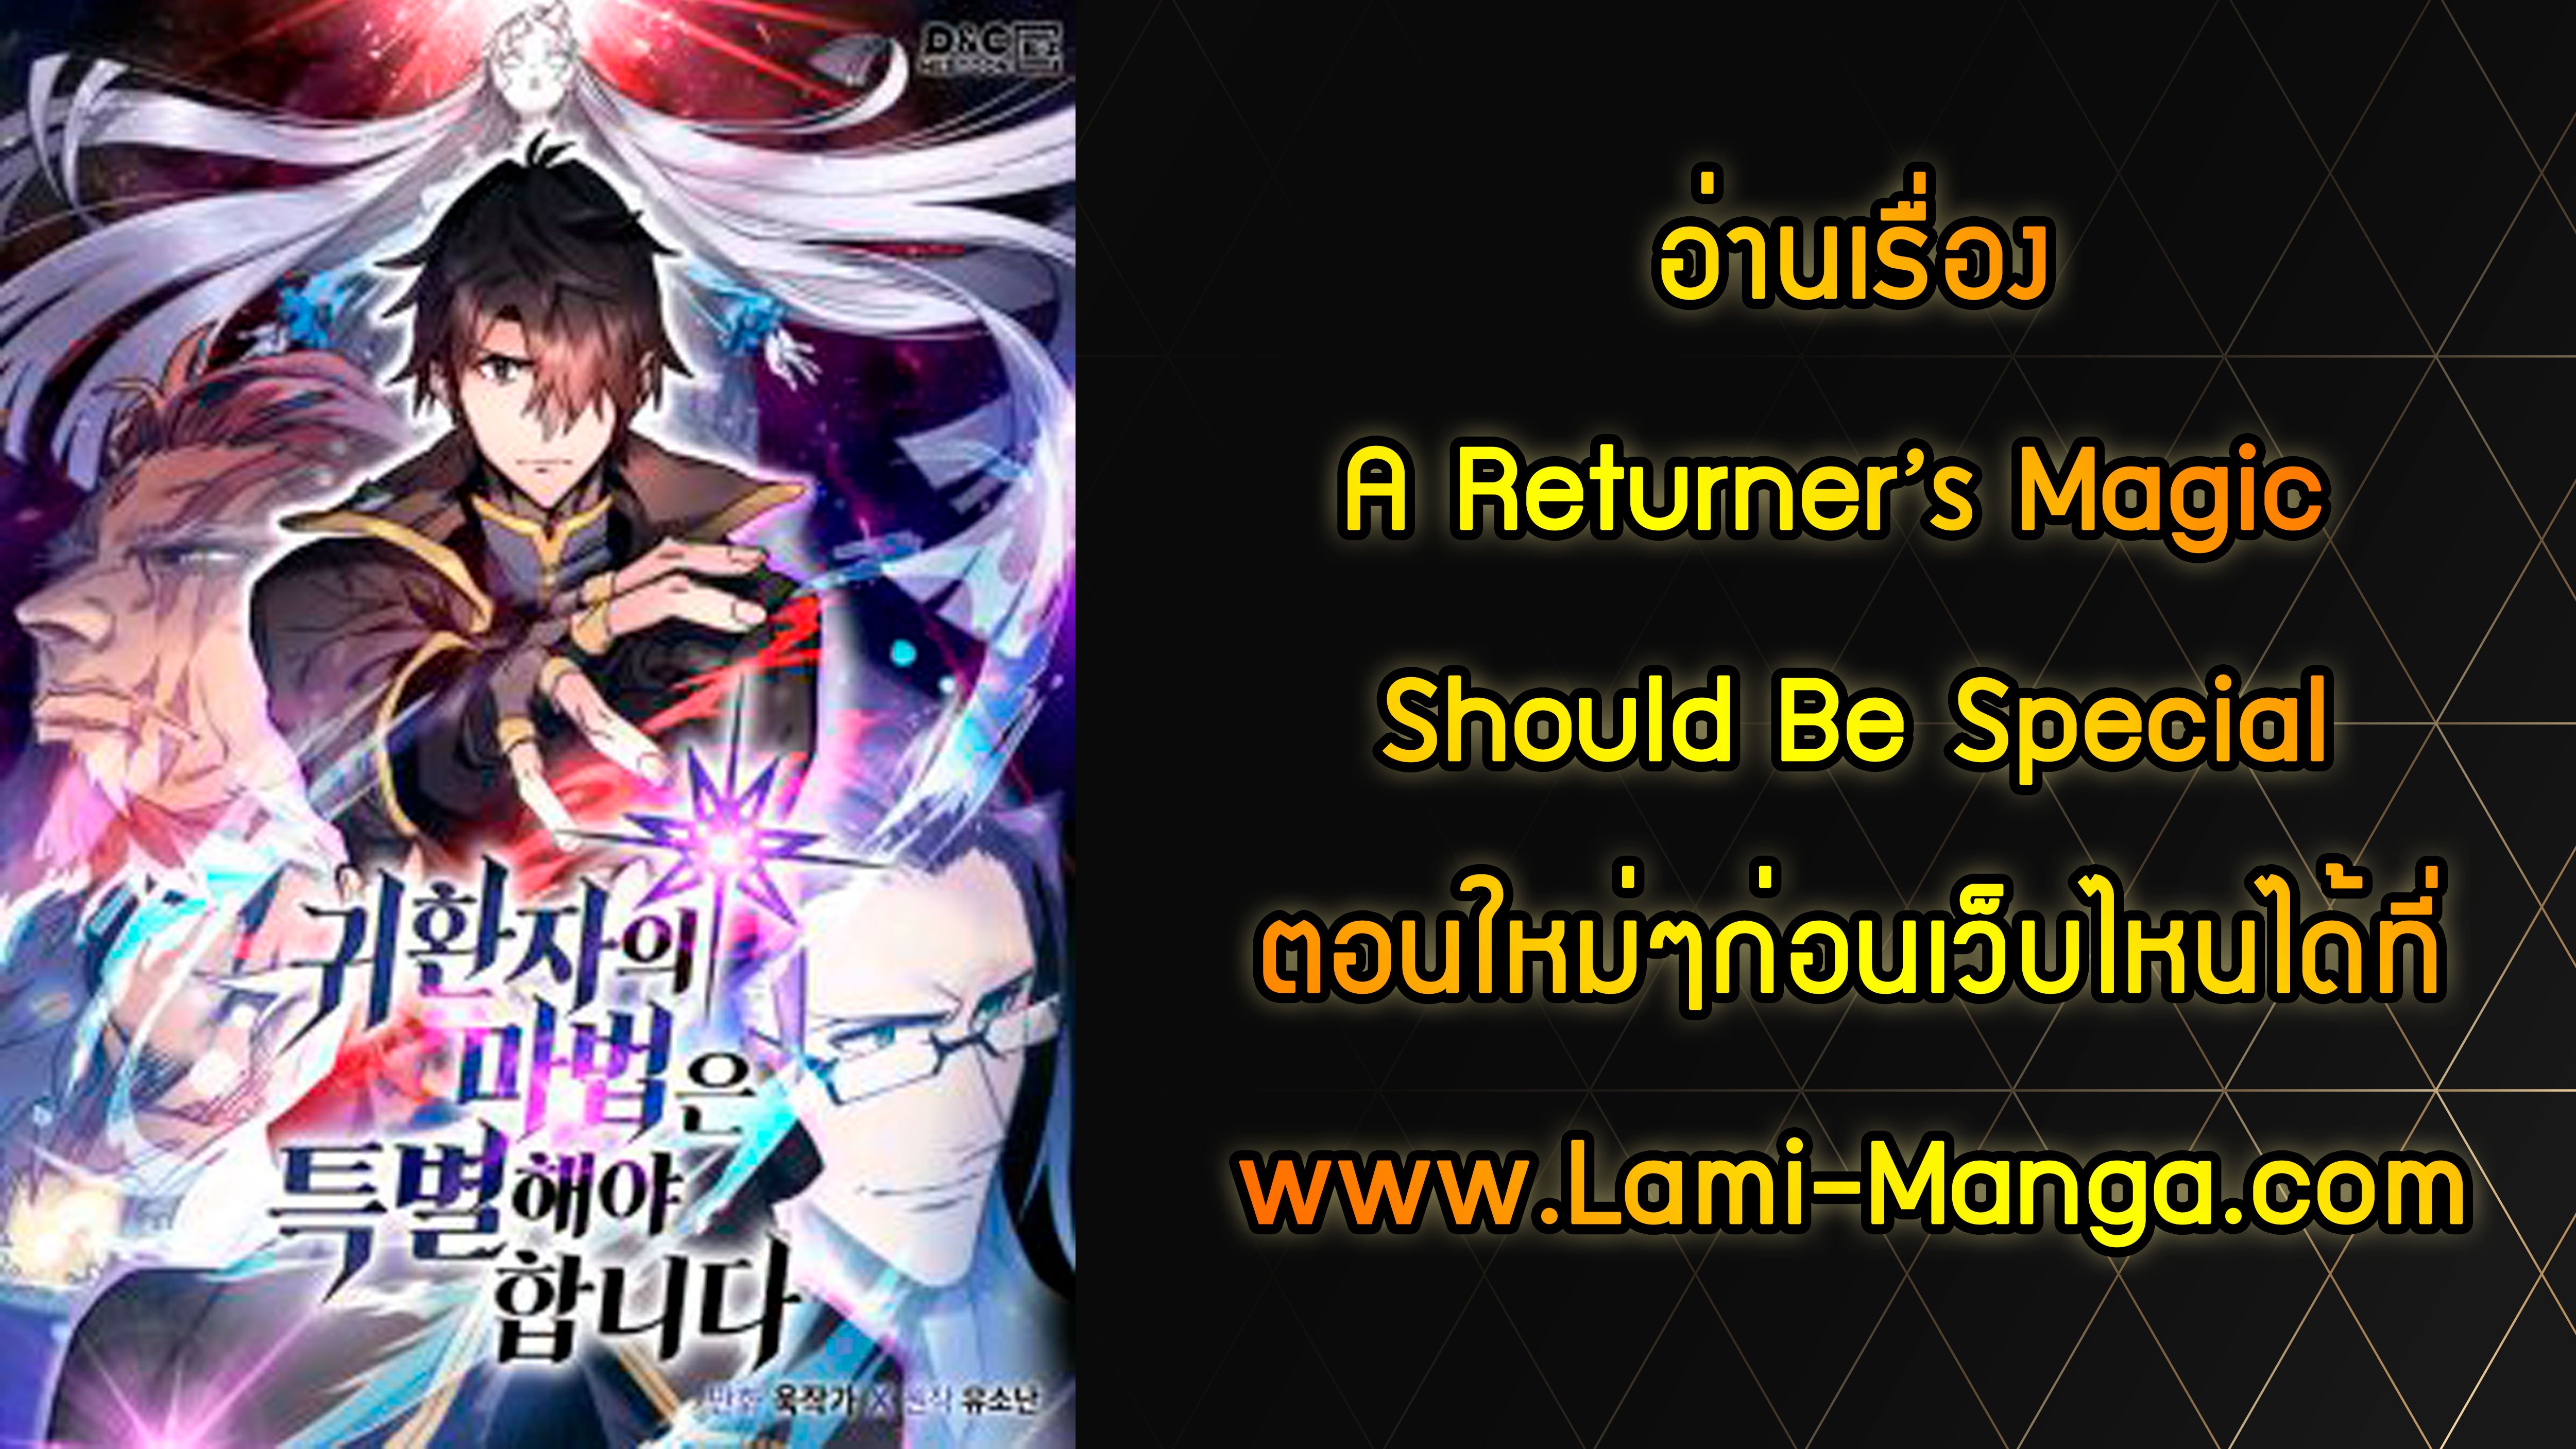 A Returner’s Magic Should Be Special114 11